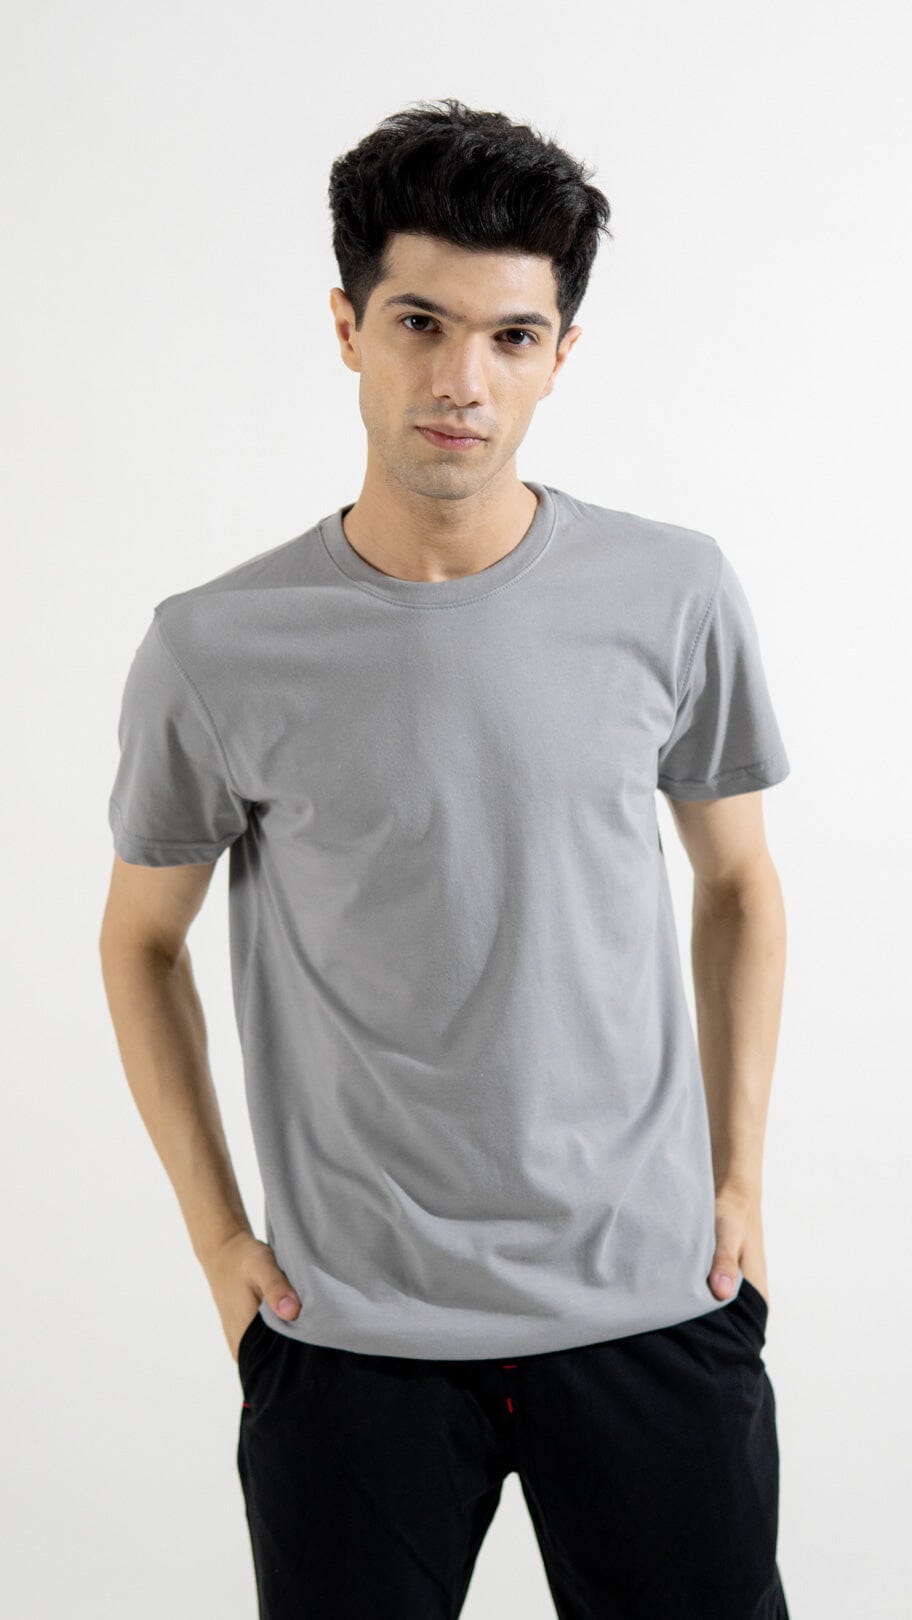 Polo Republica Men's Essentials Premium Tee Shirt Men's Tee Shirt Polo Republica Steel Grey S 